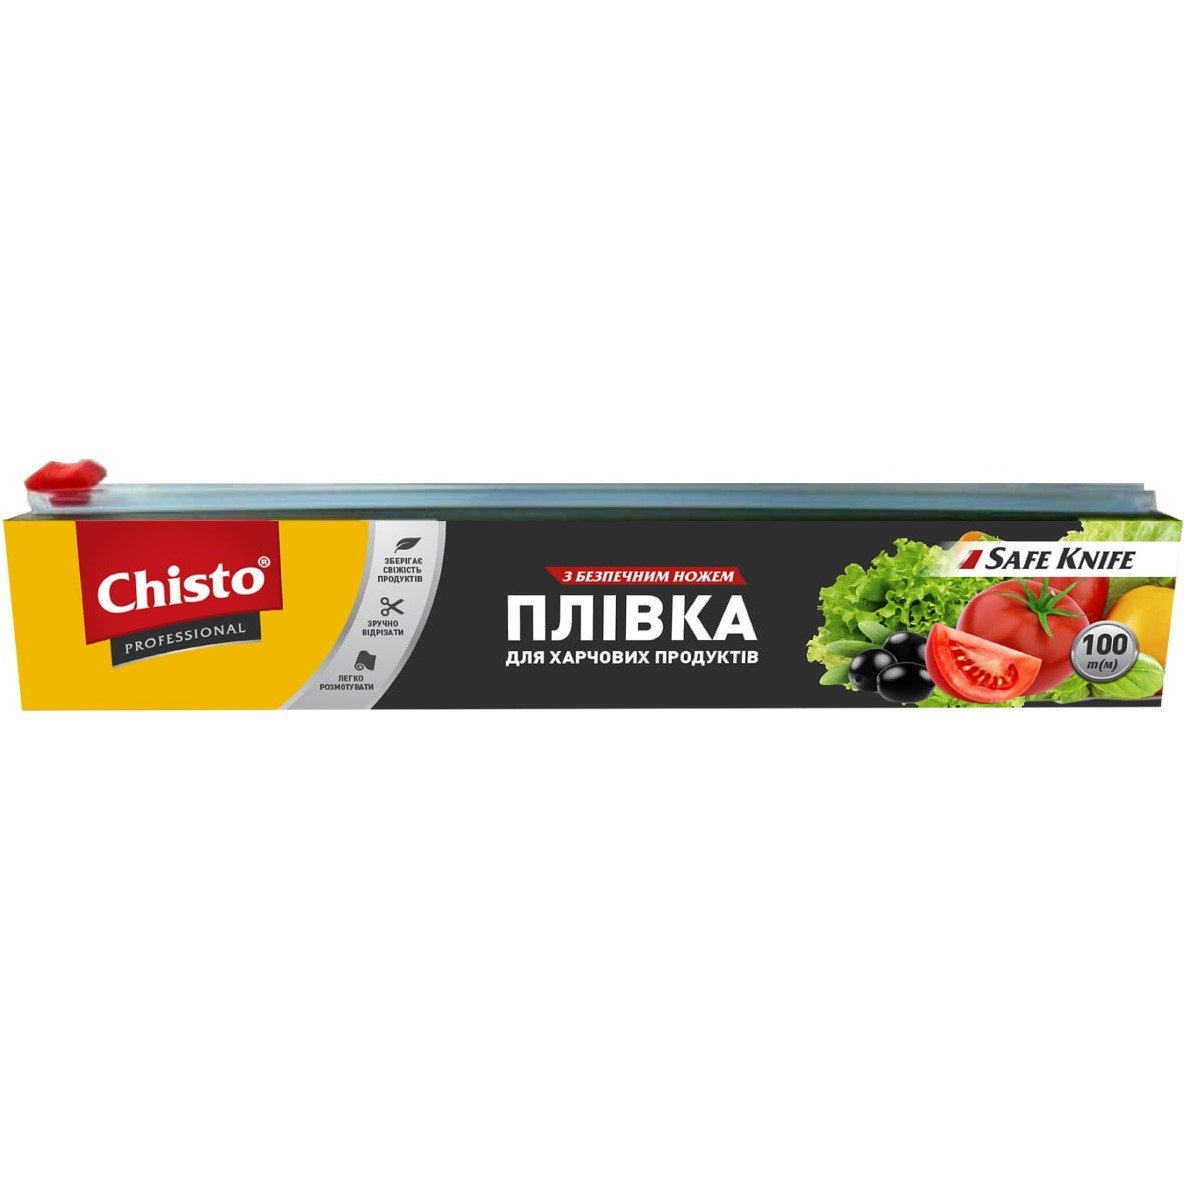 Пленка для пищевых продуктов Chisto с безопасным ножом, 100 м - фото 1